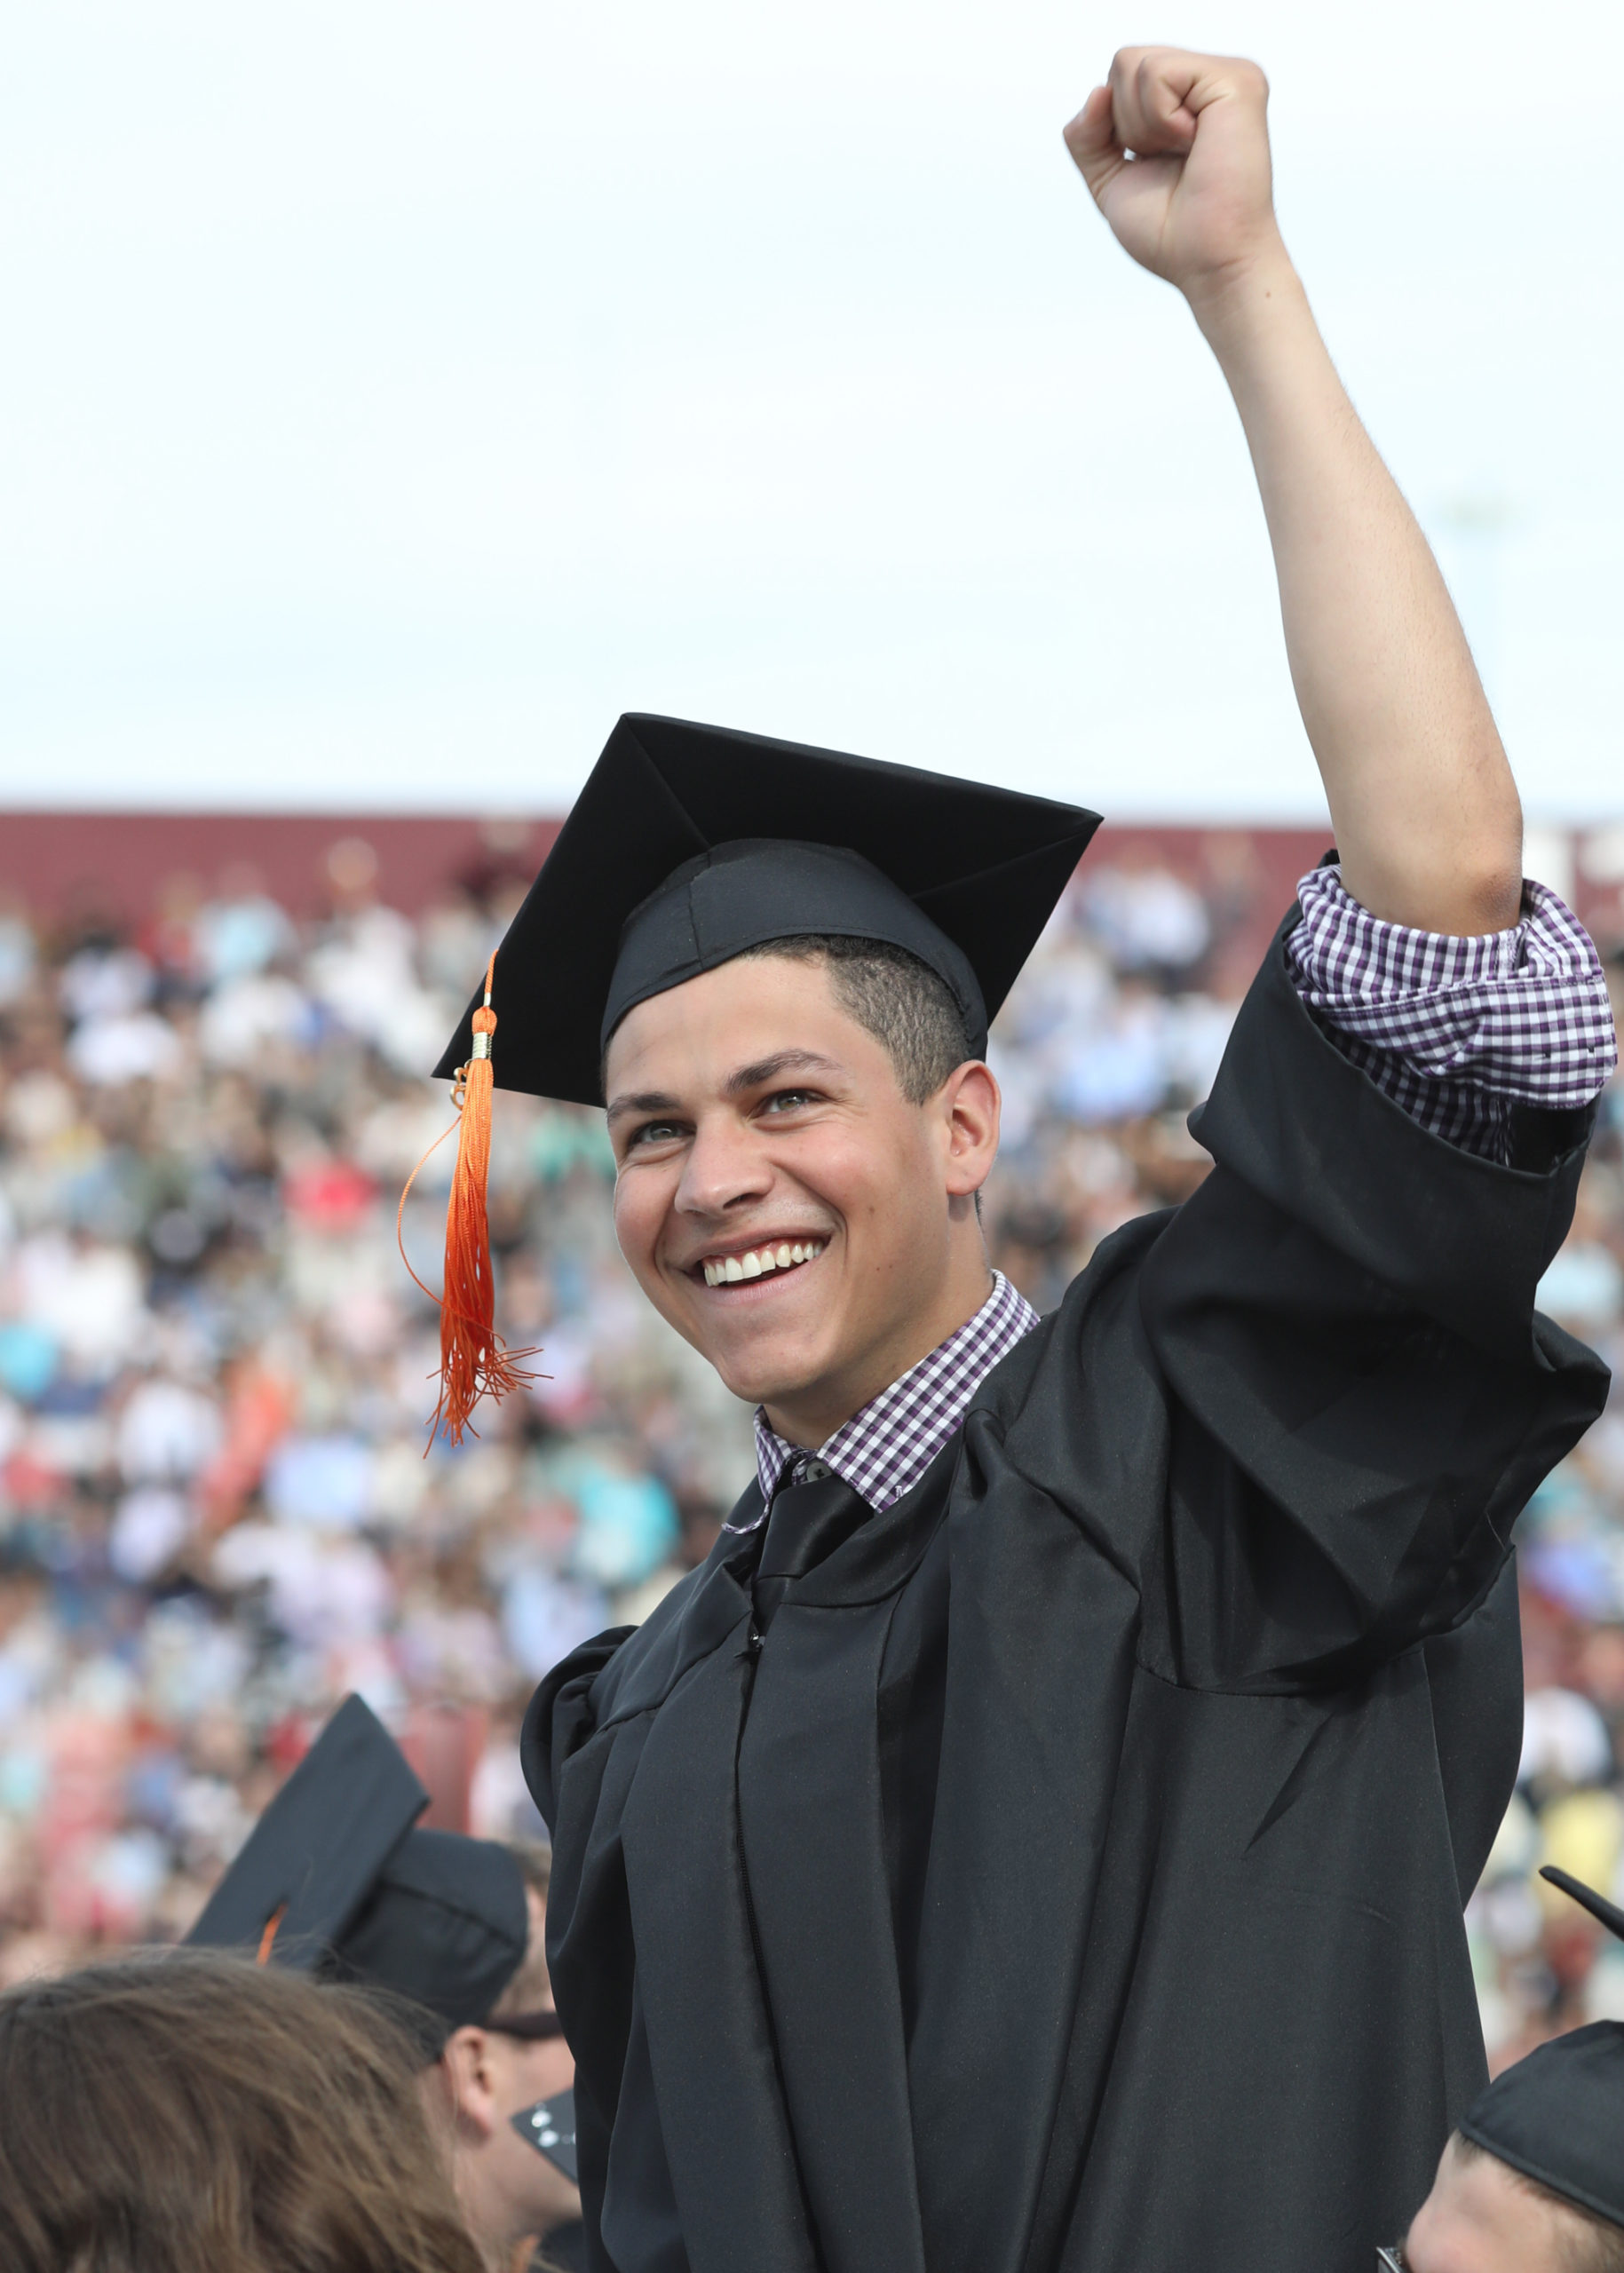 Male Graduation Pictures | Graduation photography poses, Graduation picture  poses, College graduation pictures poses